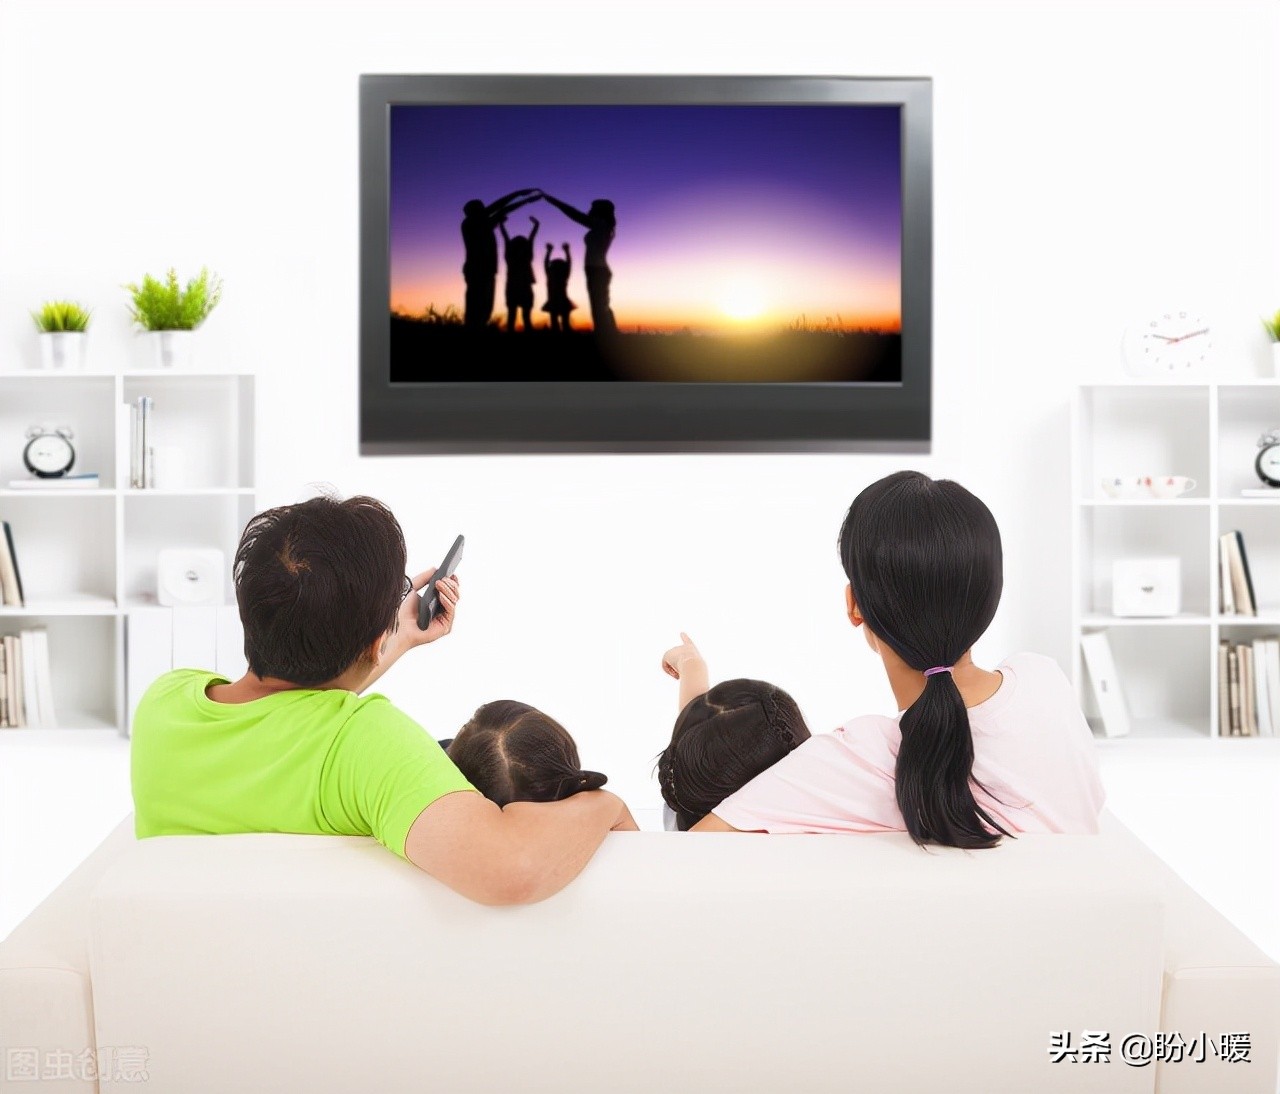 The tv programme teenagers. Семья у телевизора. Семья у телевизора спиной. Семья смотрит телевизор. Фон семья у телевизора.